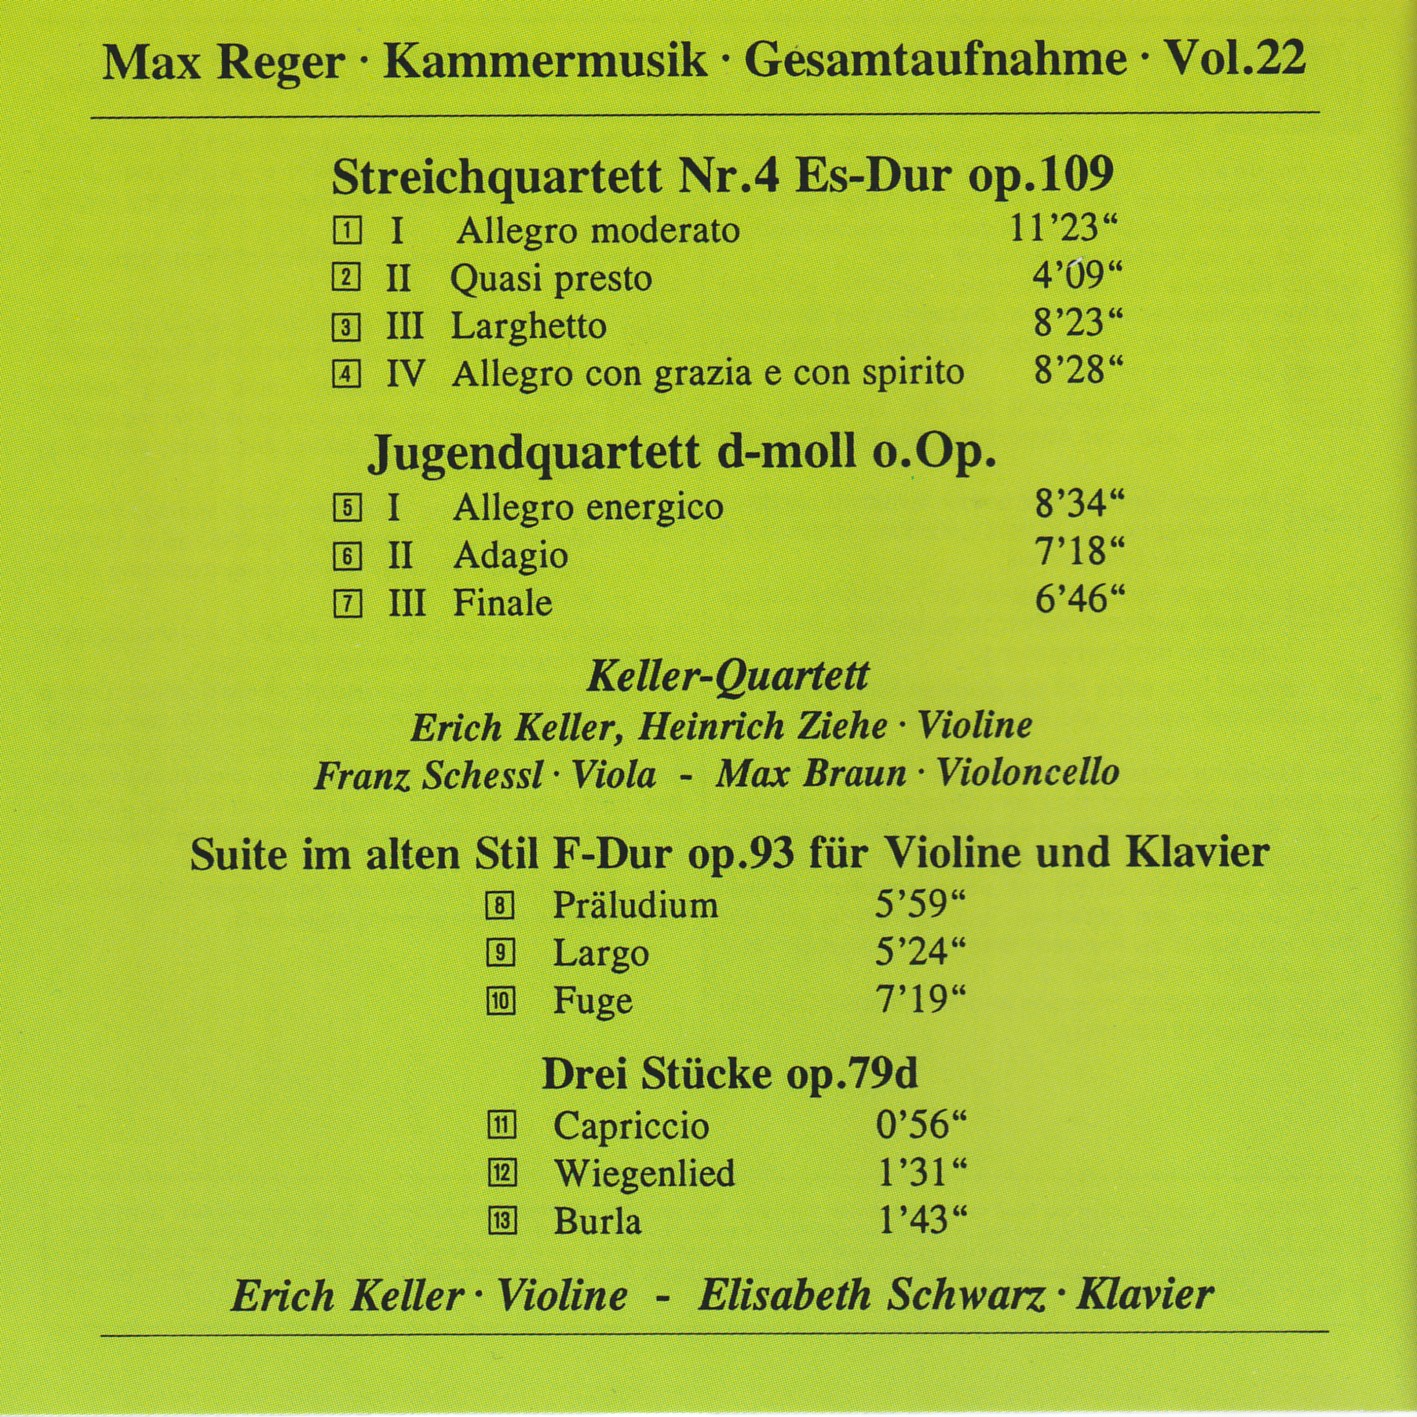 Max Reger - Kammermusik komplett Vol. 22